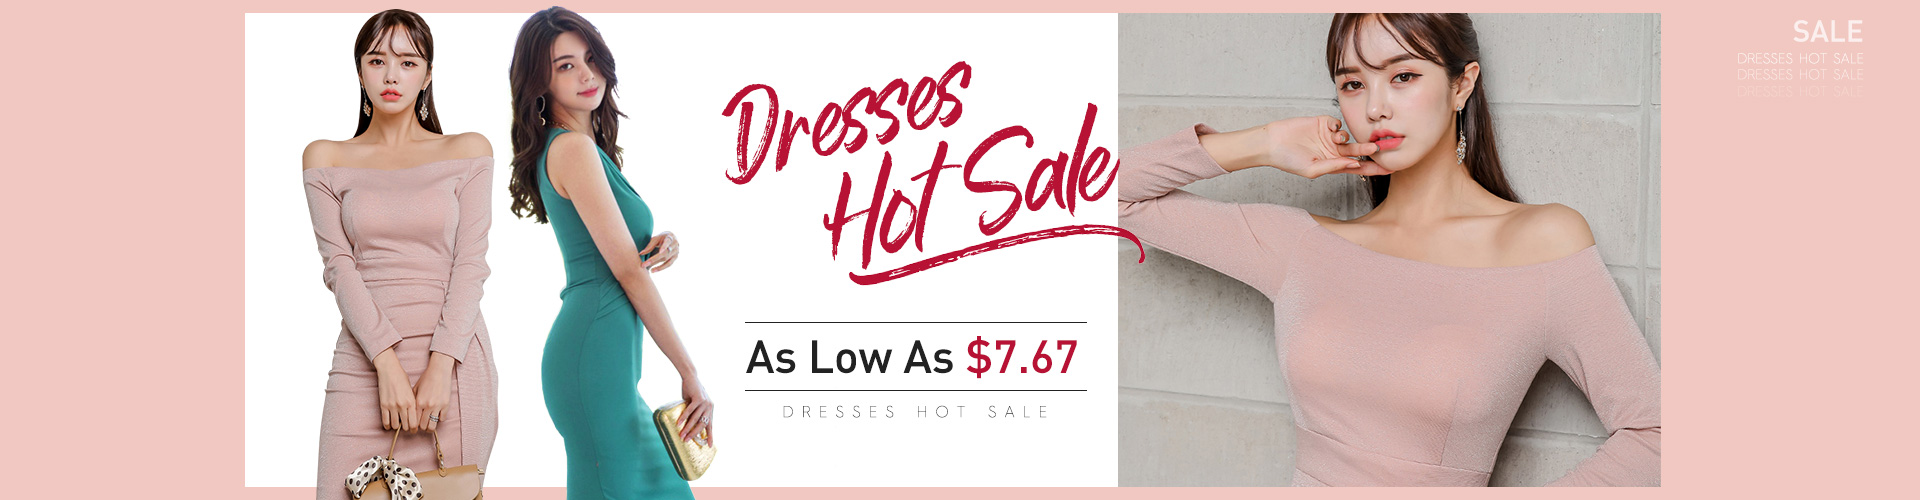 Dresses Hot Sale